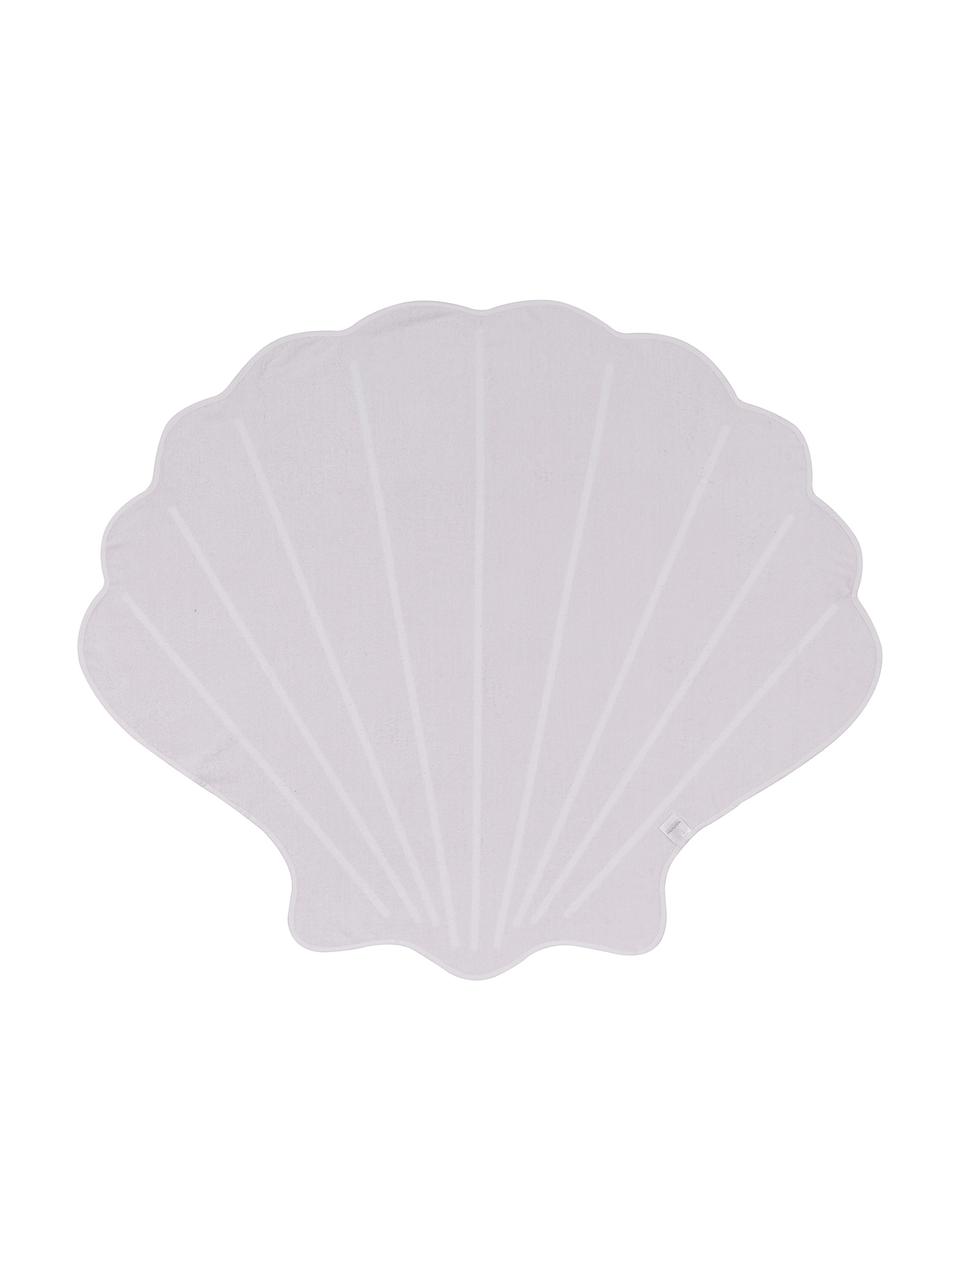 Strandtuch Shelly in Muschelform, 55% Polyester, 45% Baumwolle
Sehr leichte Qualität 340 g/m², Rosa, Weiß, 150 x 130 cm